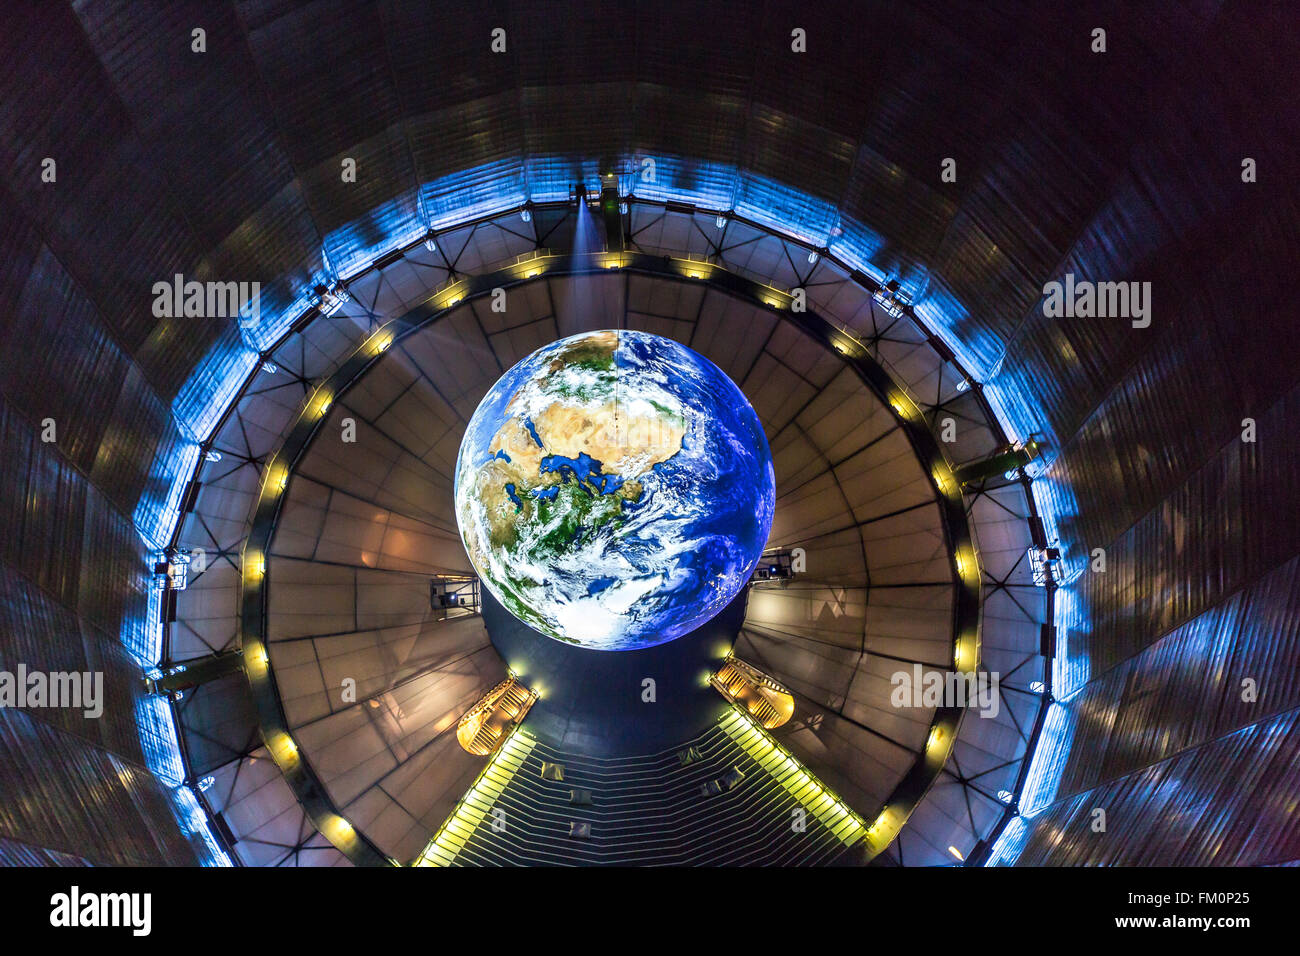 El gasómetro de Oberhausen, Alemania, Europa tiene la mayor sala de exposiciones, de 117 metros de altura, la nueva exposición, maravillas de la naturaleza, Foto de stock